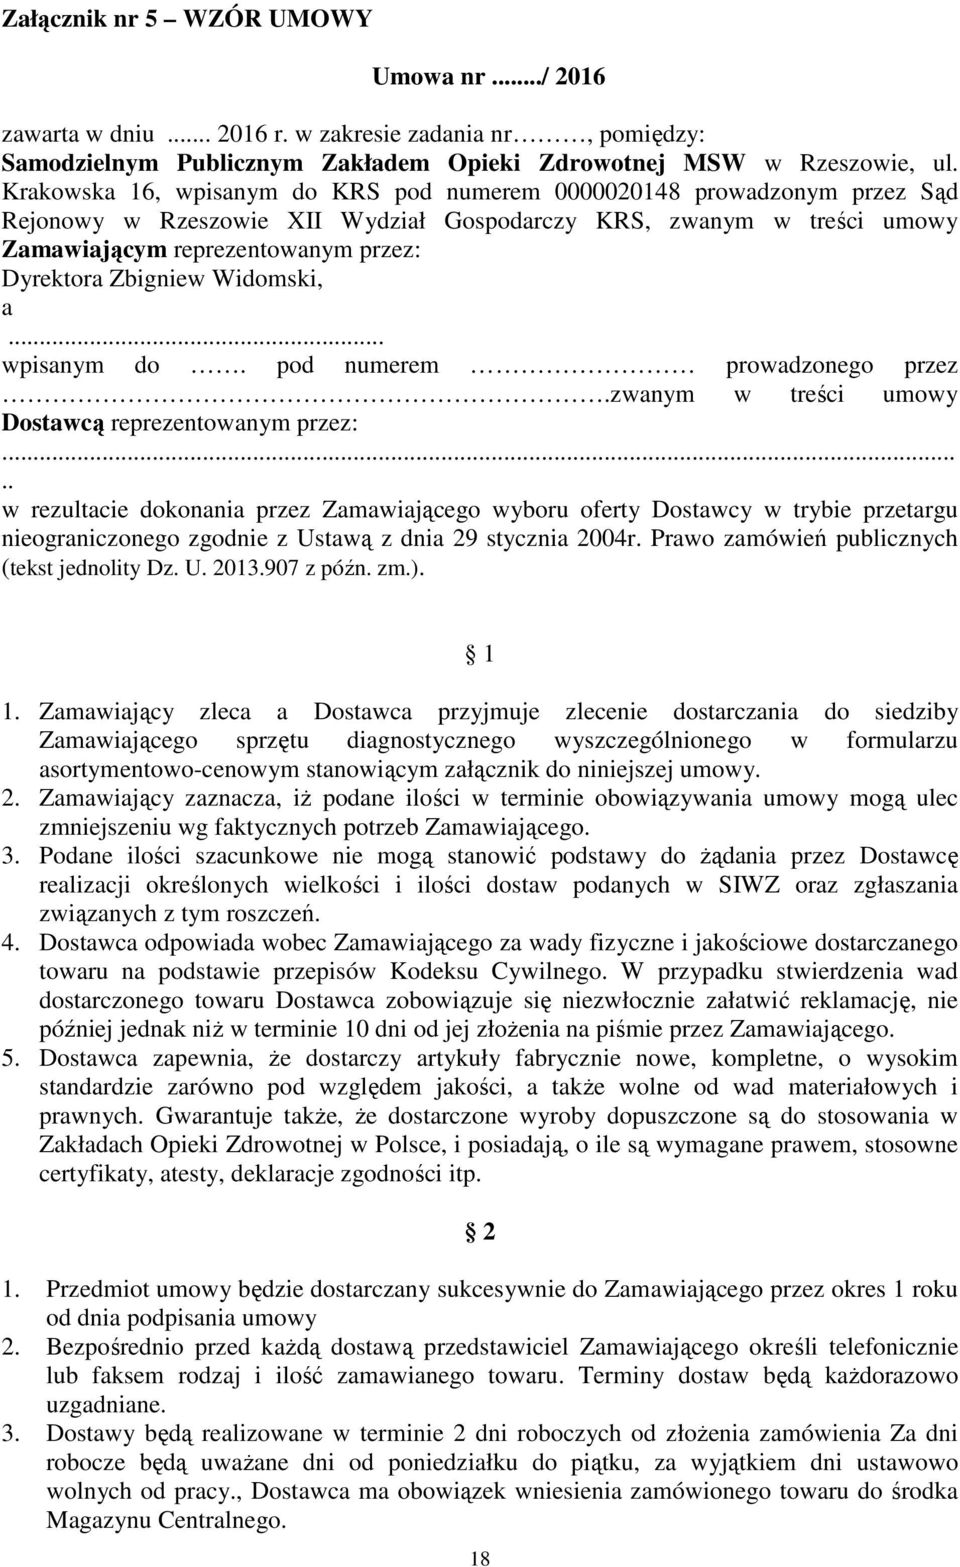 Zbigniew Widomski, a... wpisanym do. pod numerem prowadzonego przez.zwanym w treści umowy Dostawcą reprezentowanym przez:.